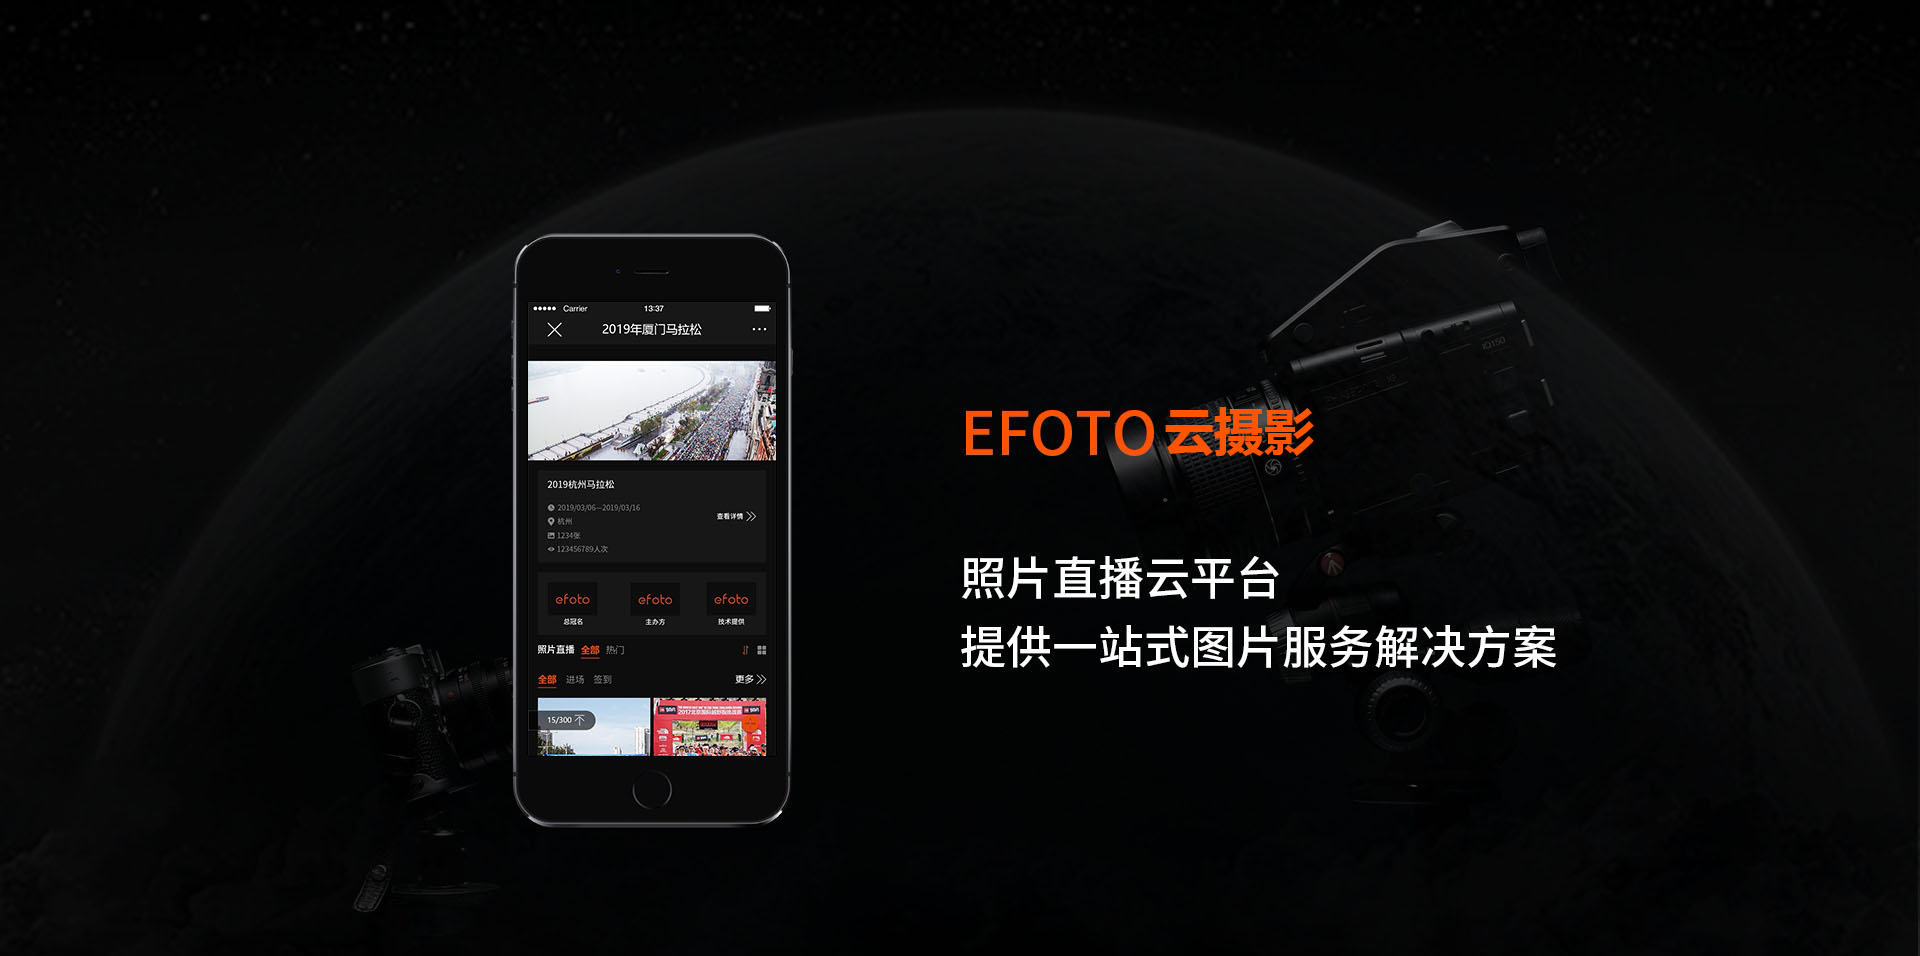 EFOTO云摄影，照片直播云平台，提供一站式图片服务解决方案